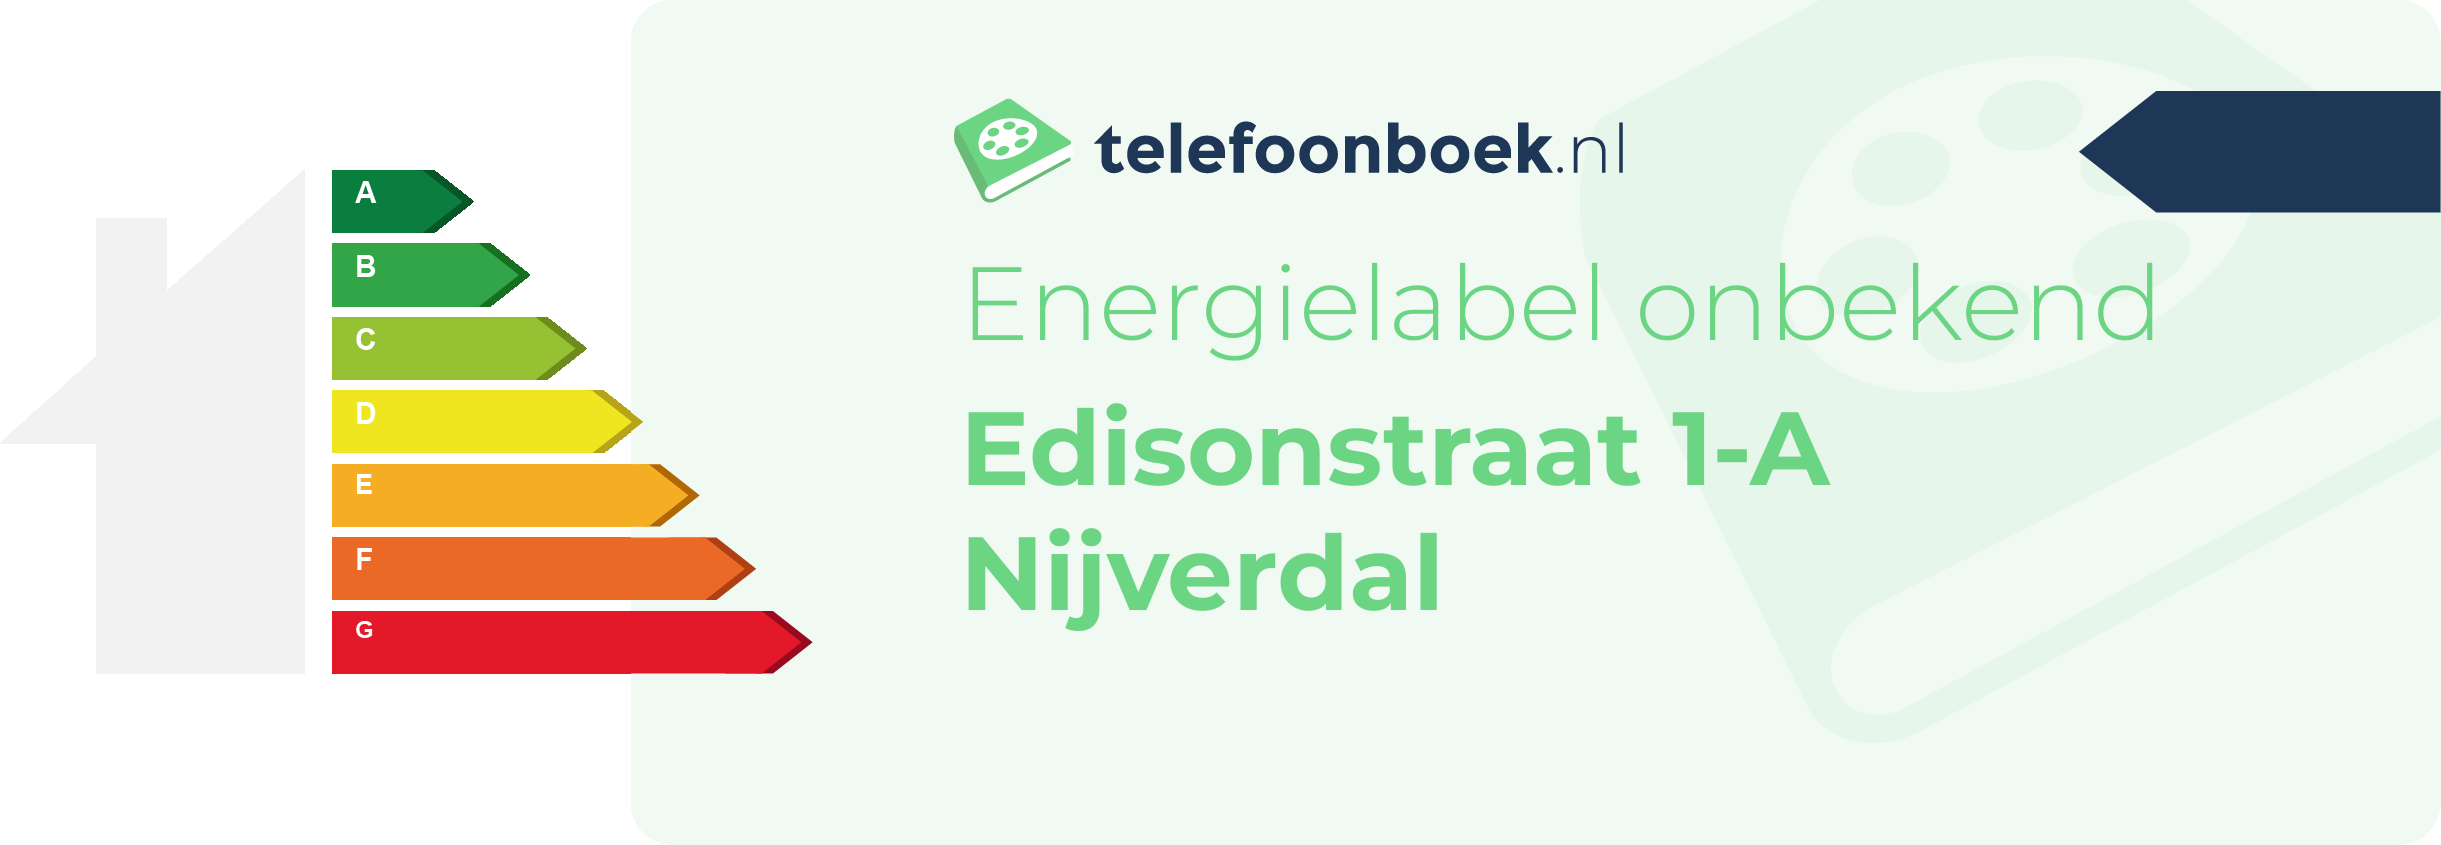 Energielabel Edisonstraat 1-A Nijverdal